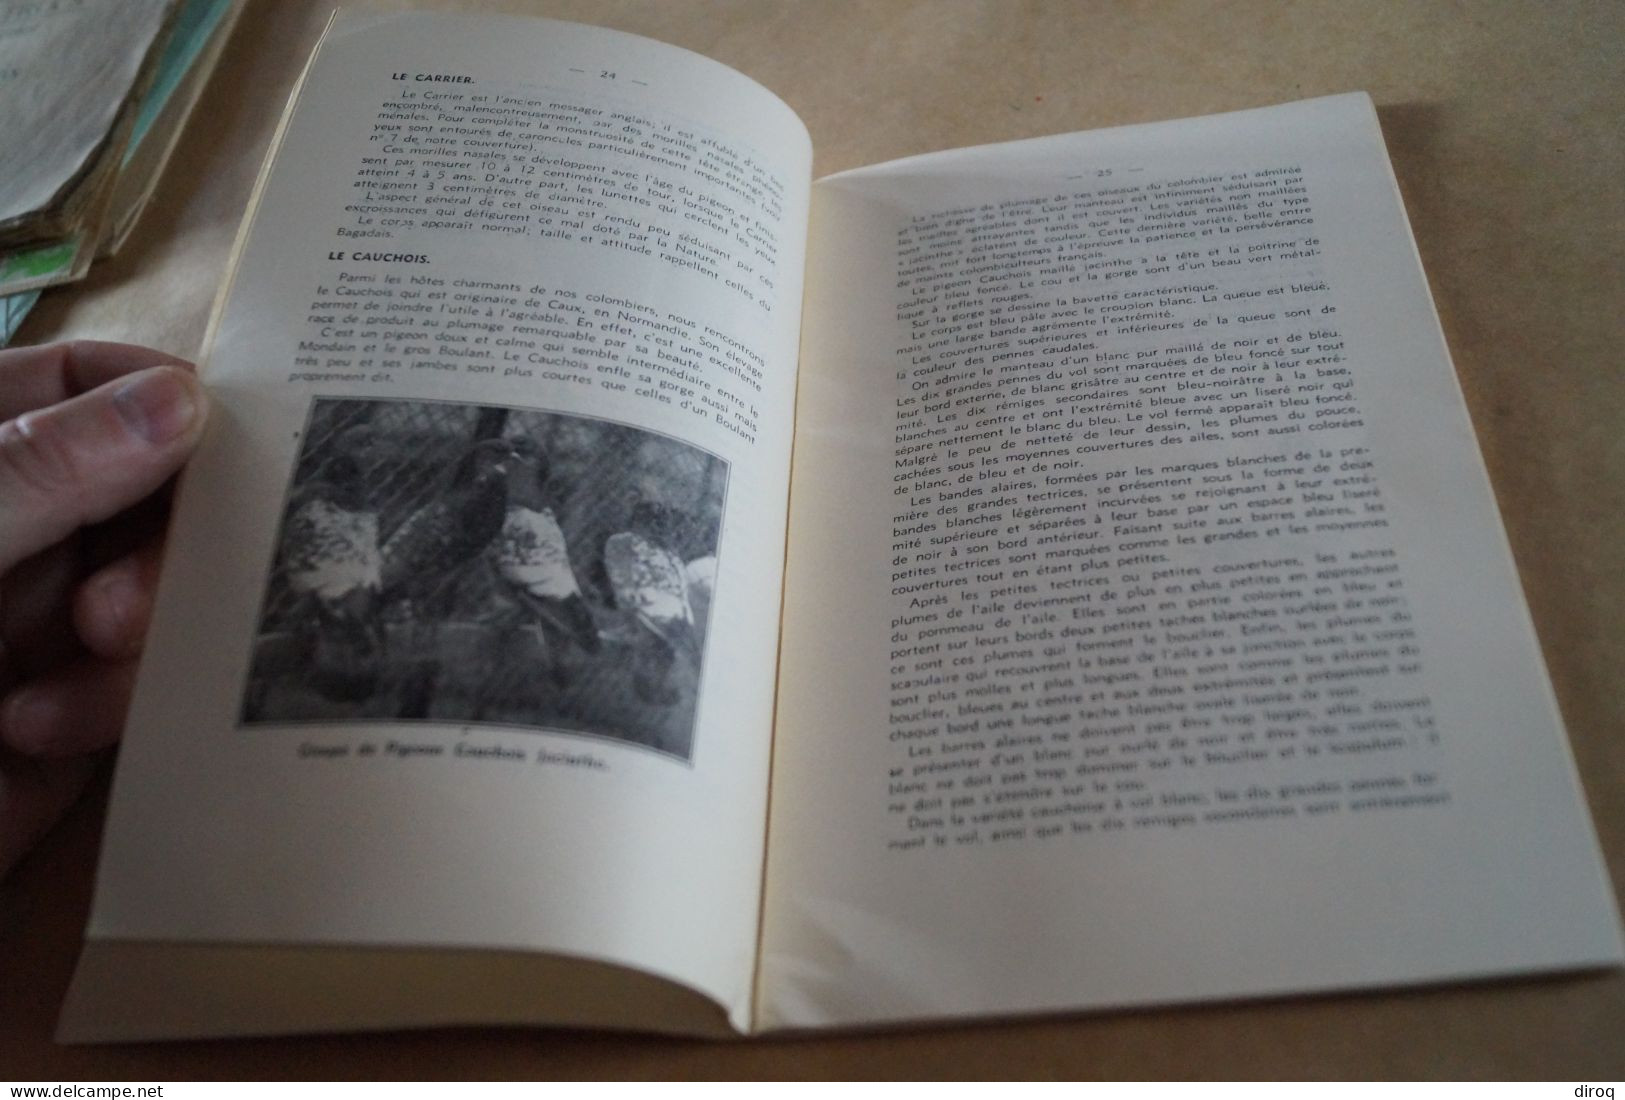 Colombophile,Pigeon,RARE ancien ouvrage avec lot de plumes,102 pages,21 Cm. / 13,5 Cm